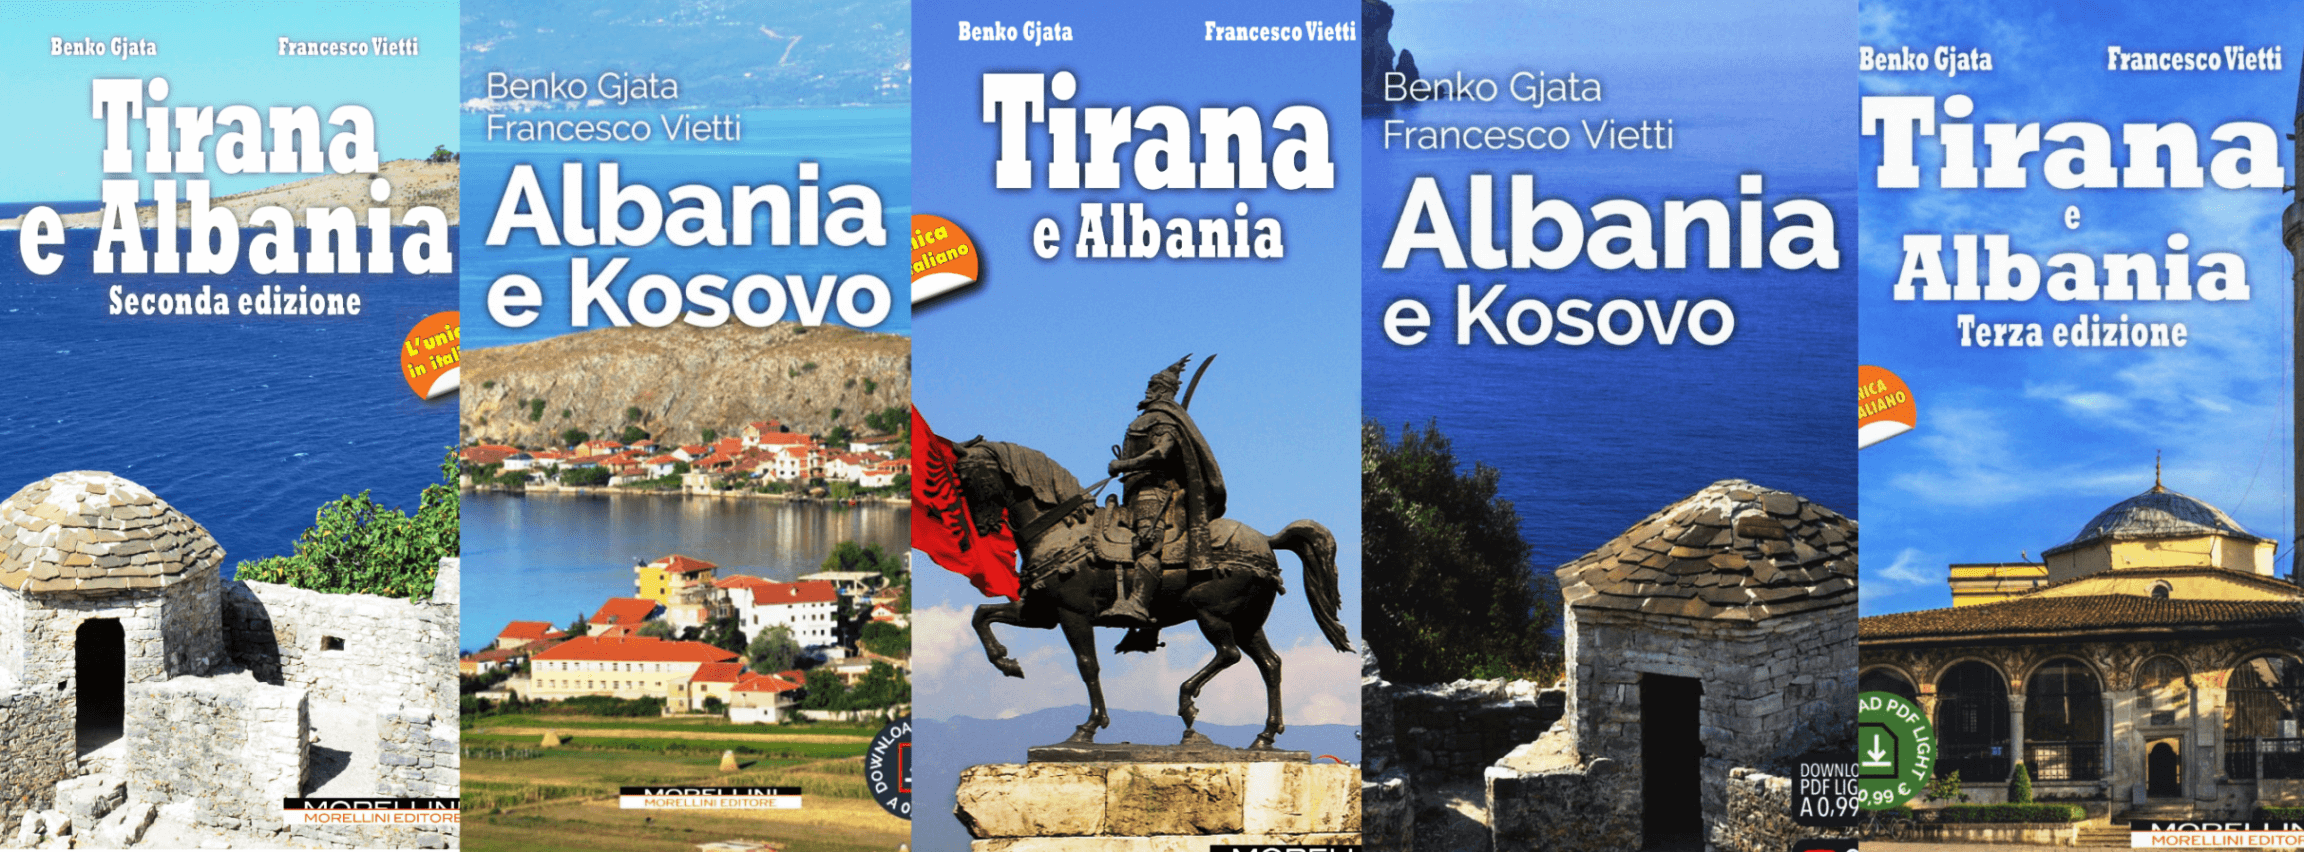 albania tourist guide book